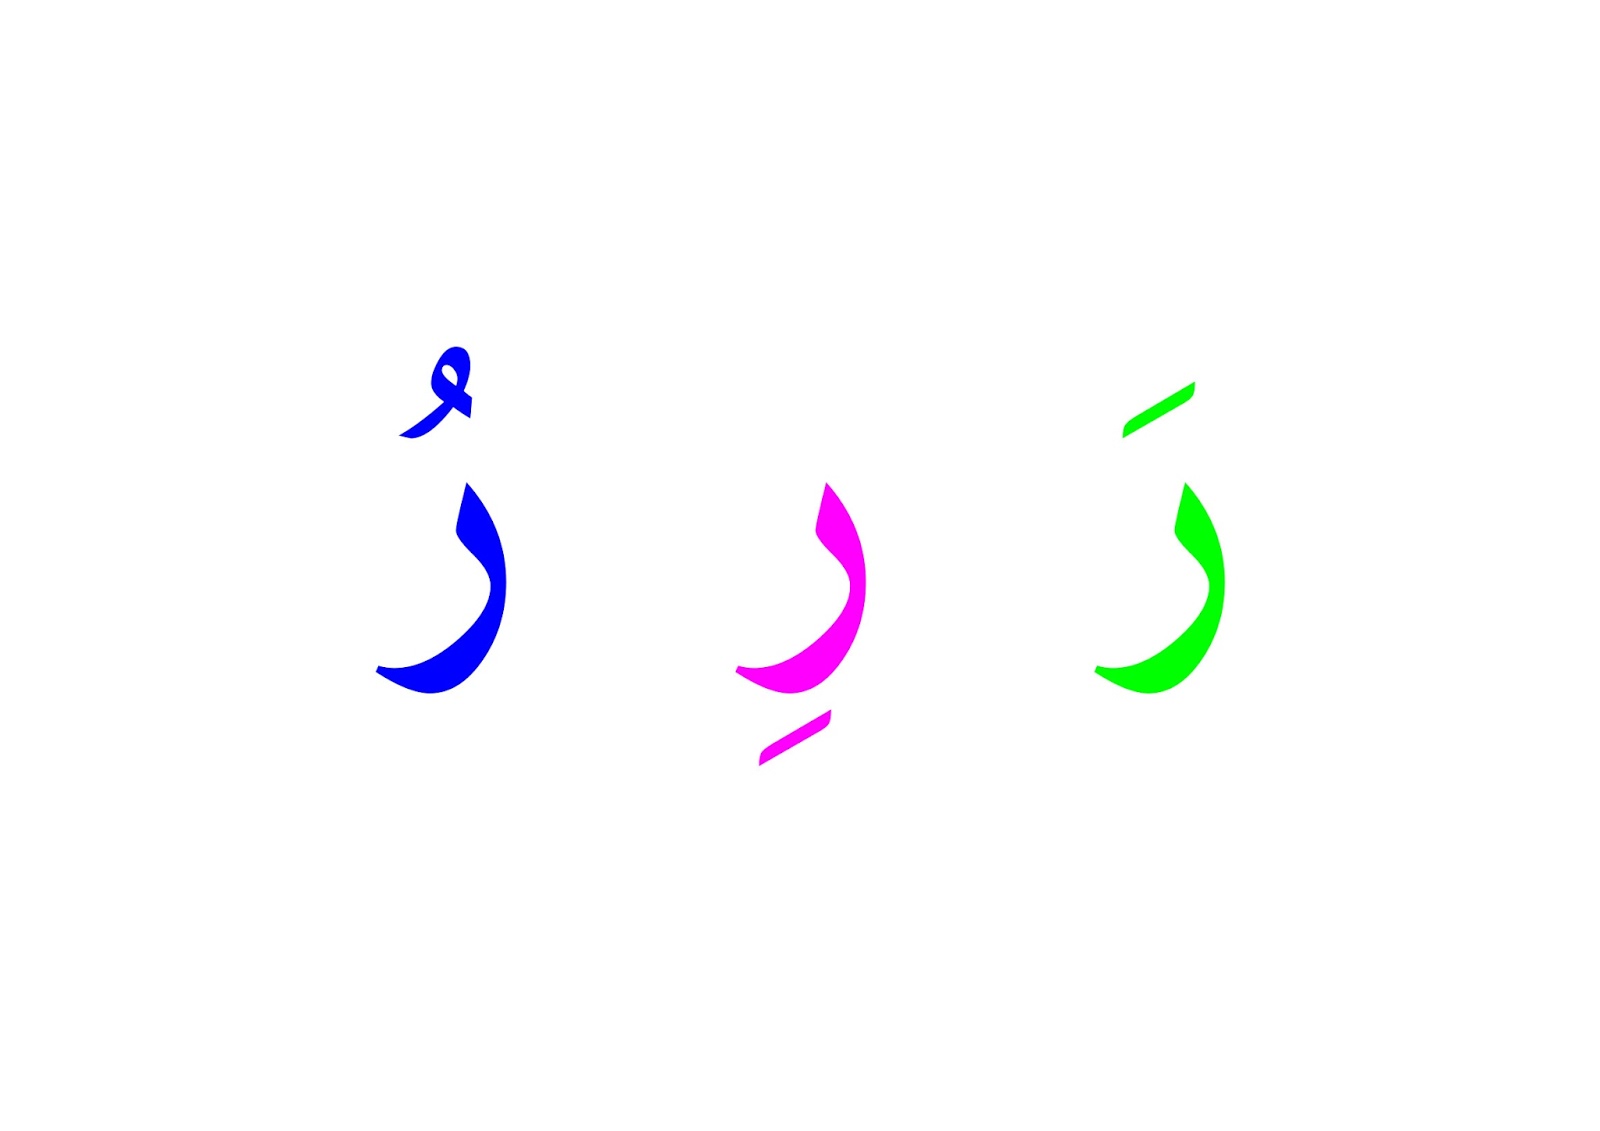 جميع الحروف بالحركات الثلاثة ملونة